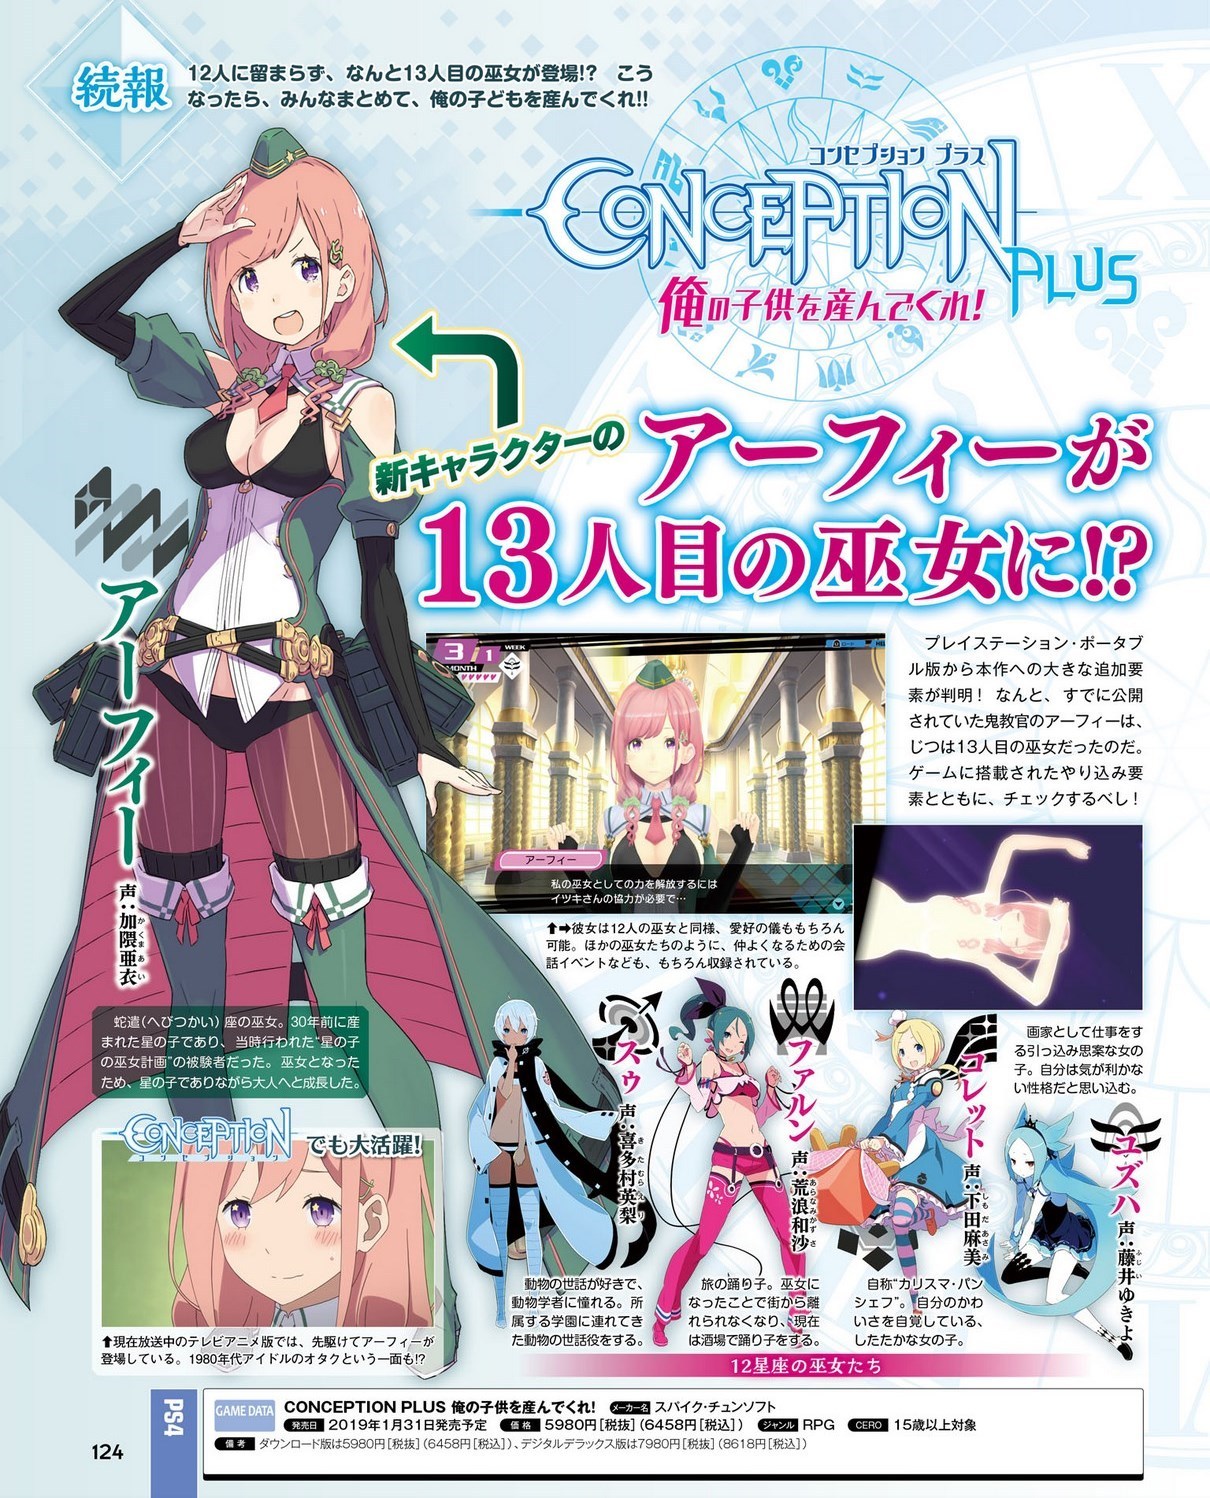 Conception Plus further details Arfie, Double Love Ceremonies, and  independent Star Children - Gematsu